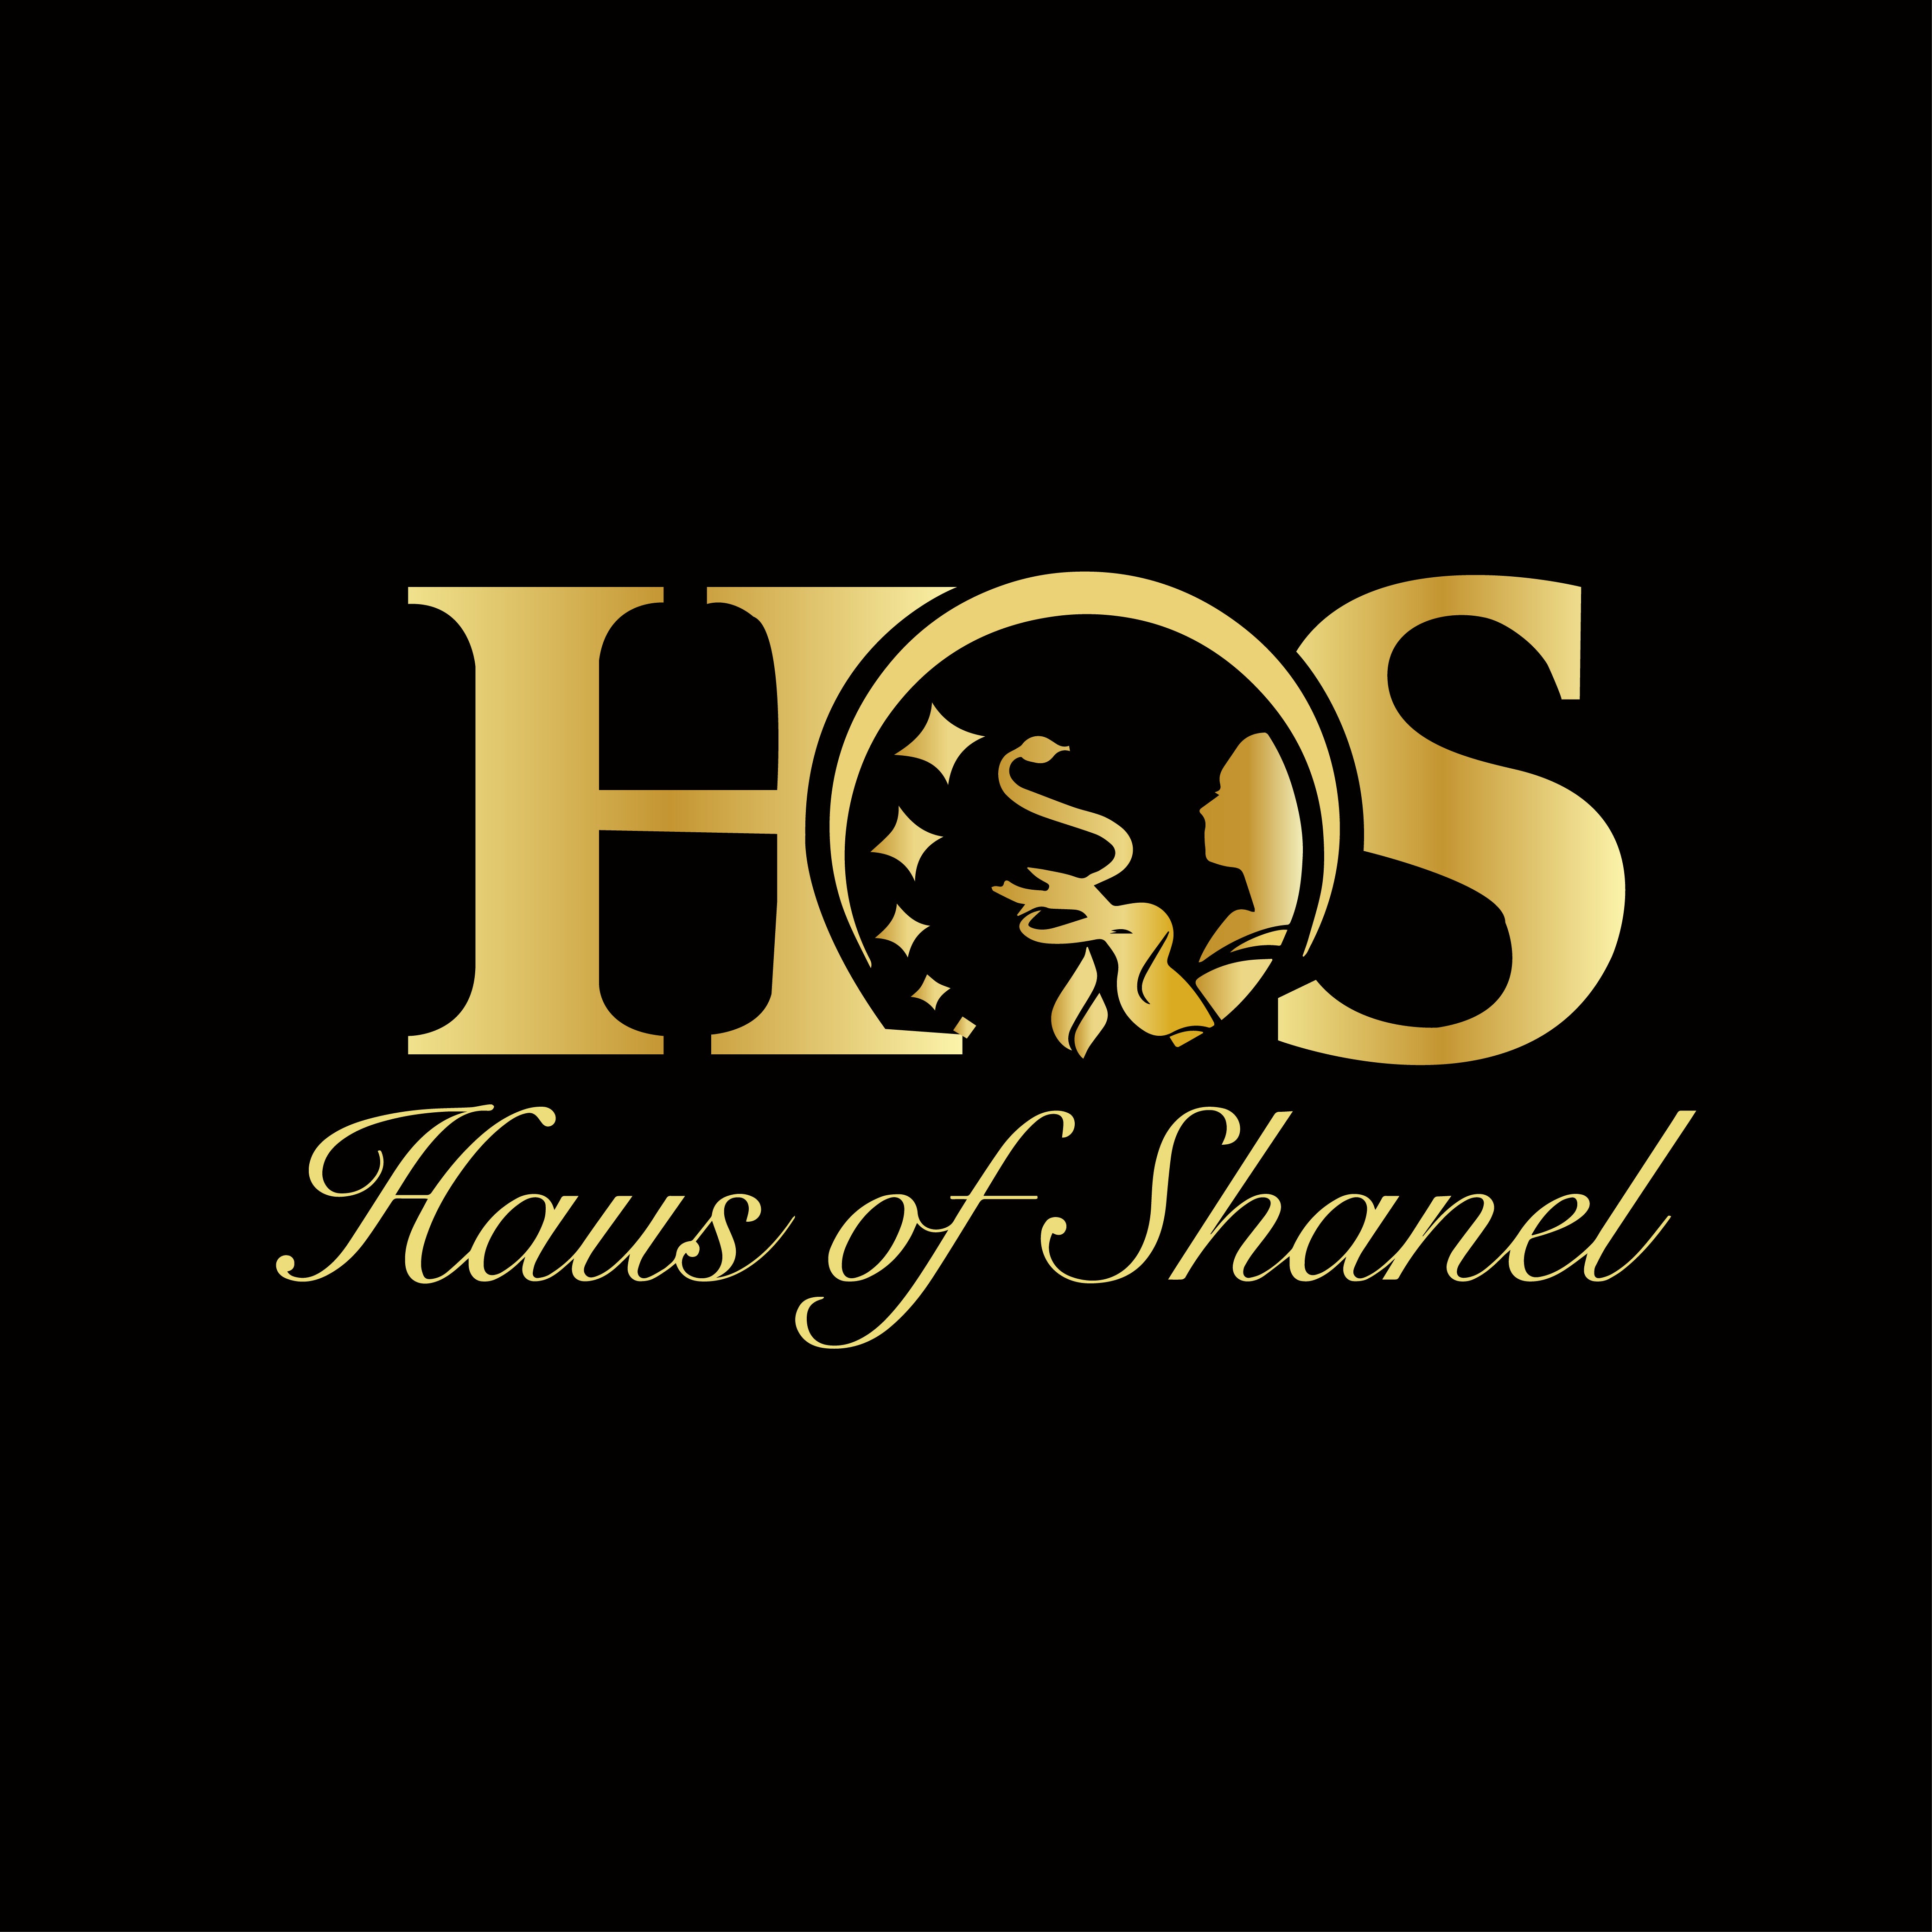 Haus of Shanel